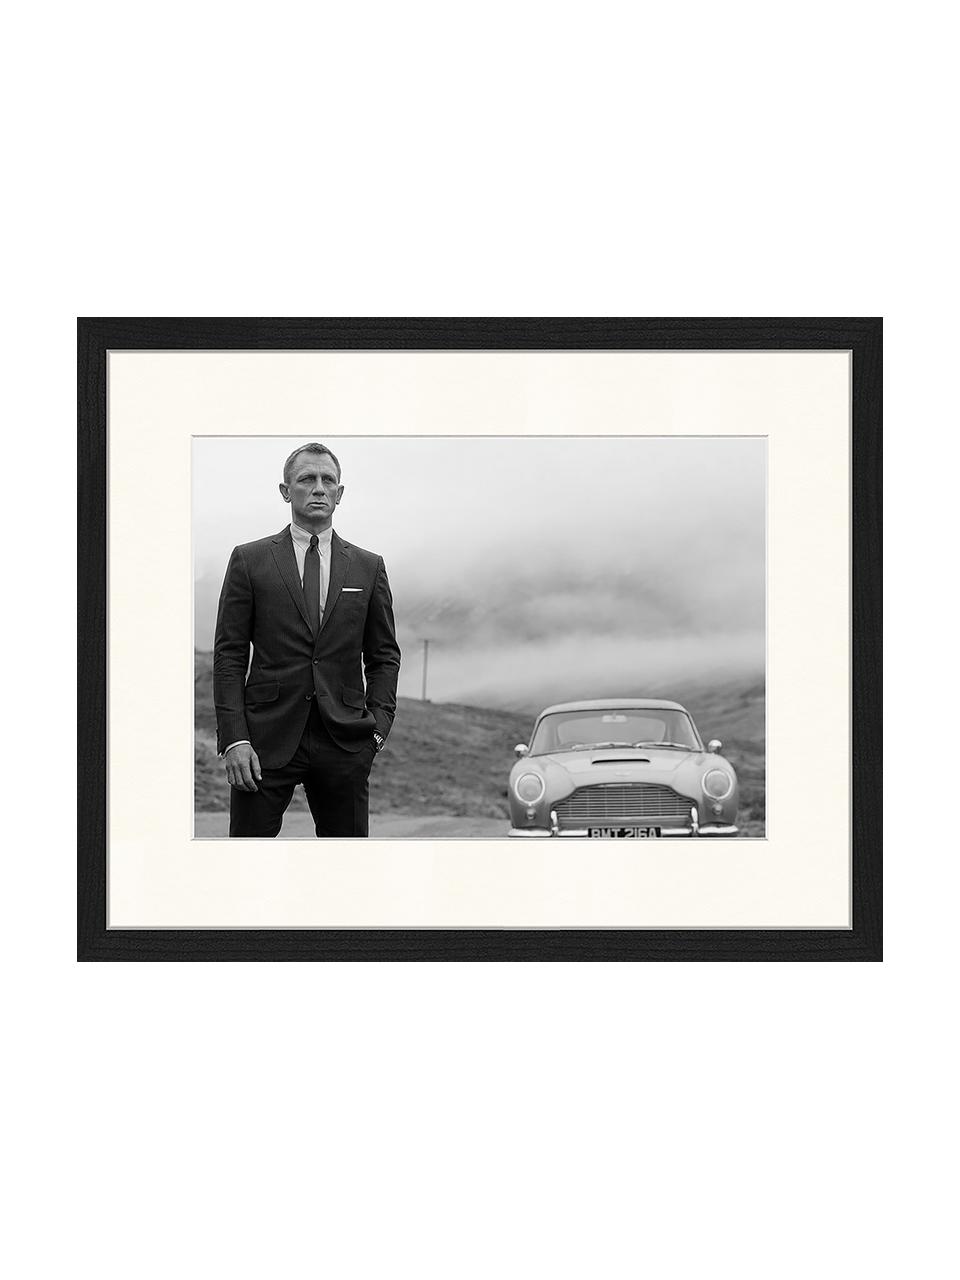 Gerahmte Fotografie Daniel Craig as James Bond, Rahmen: Buchenholz, FSC zertifizi, Bild: Digitaldruck auf Papier, , Front: Acrylglas, Schwarz, Off White, B 43 x H 33 cm